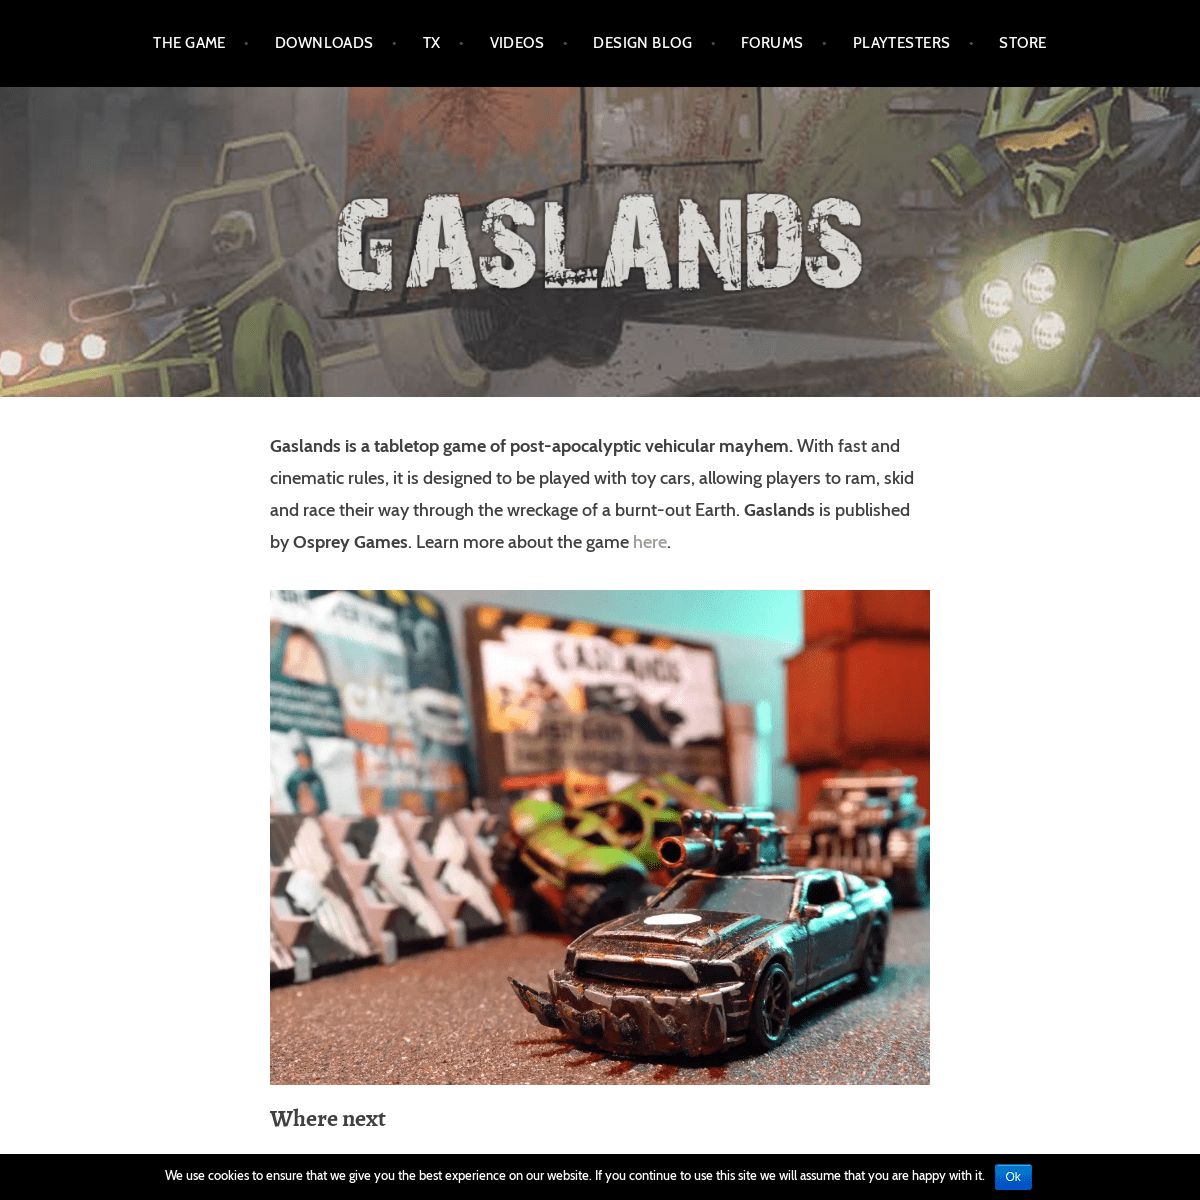 A complete backup of gaslands.com